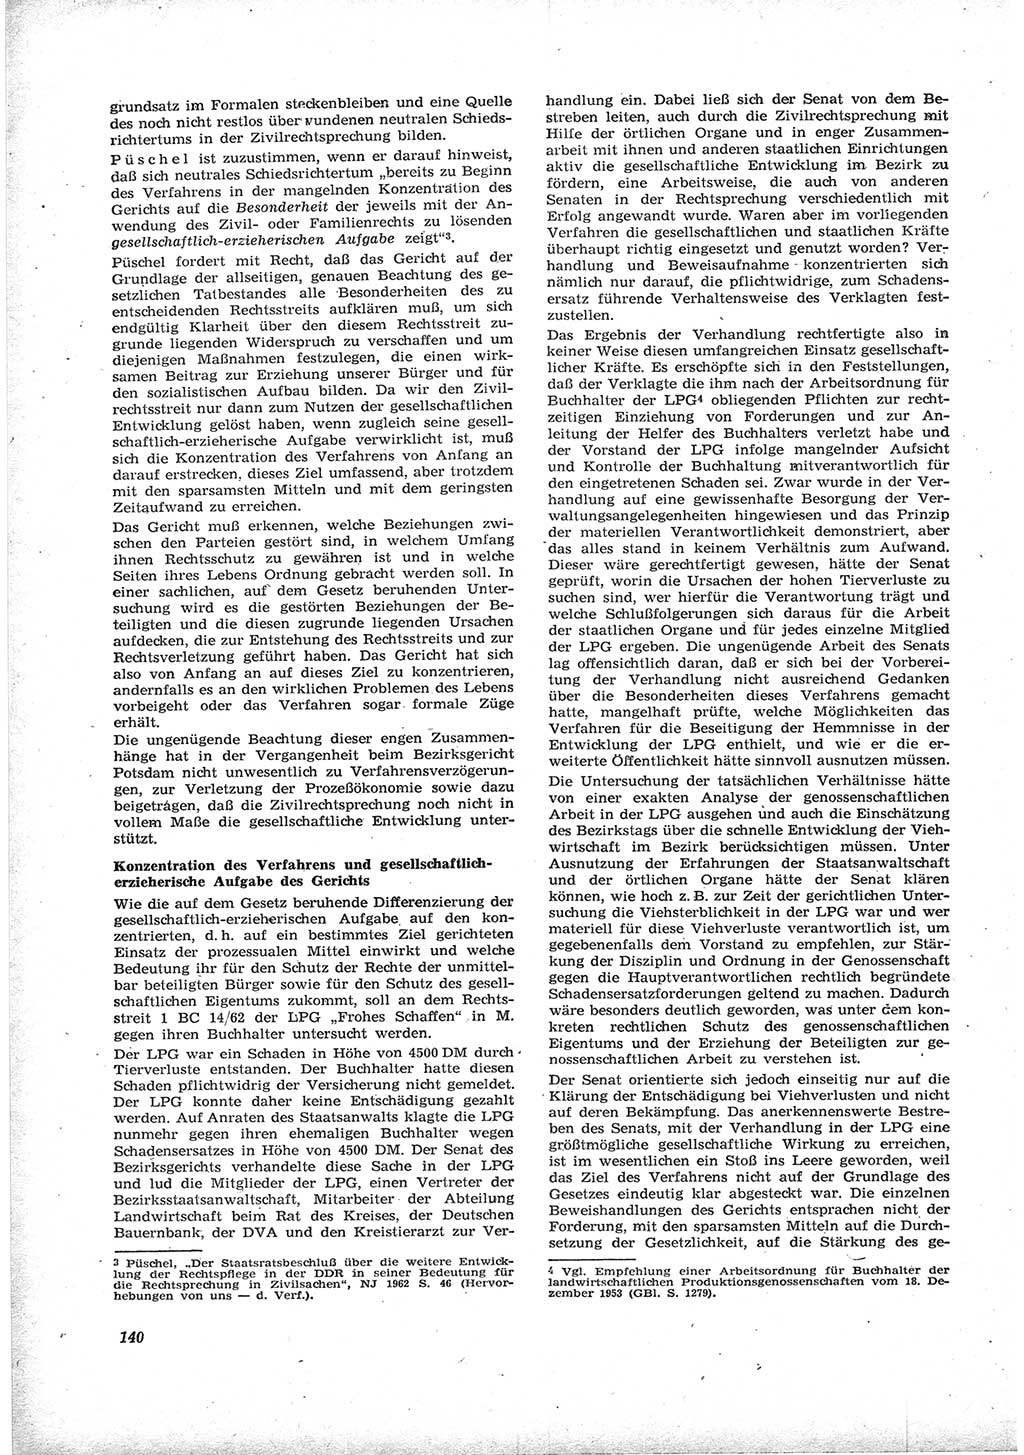 Neue Justiz (NJ), Zeitschrift für Recht und Rechtswissenschaft [Deutsche Demokratische Republik (DDR)], 17. Jahrgang 1963, Seite 140 (NJ DDR 1963, S. 140)